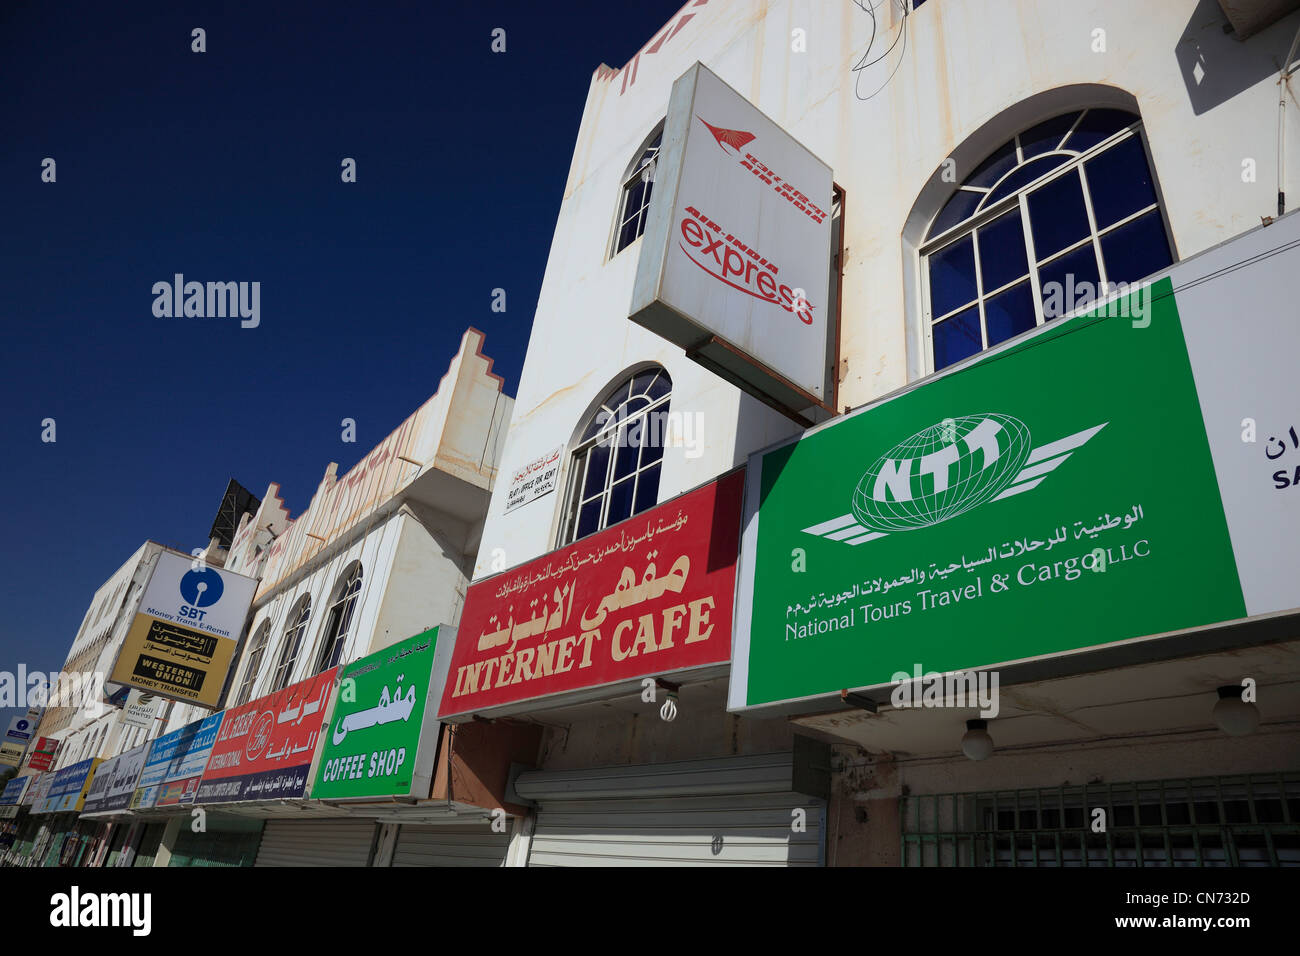 Innenstadt von Salalah, Oman, Werbeschilder, Internet-Cafe Stock Photo